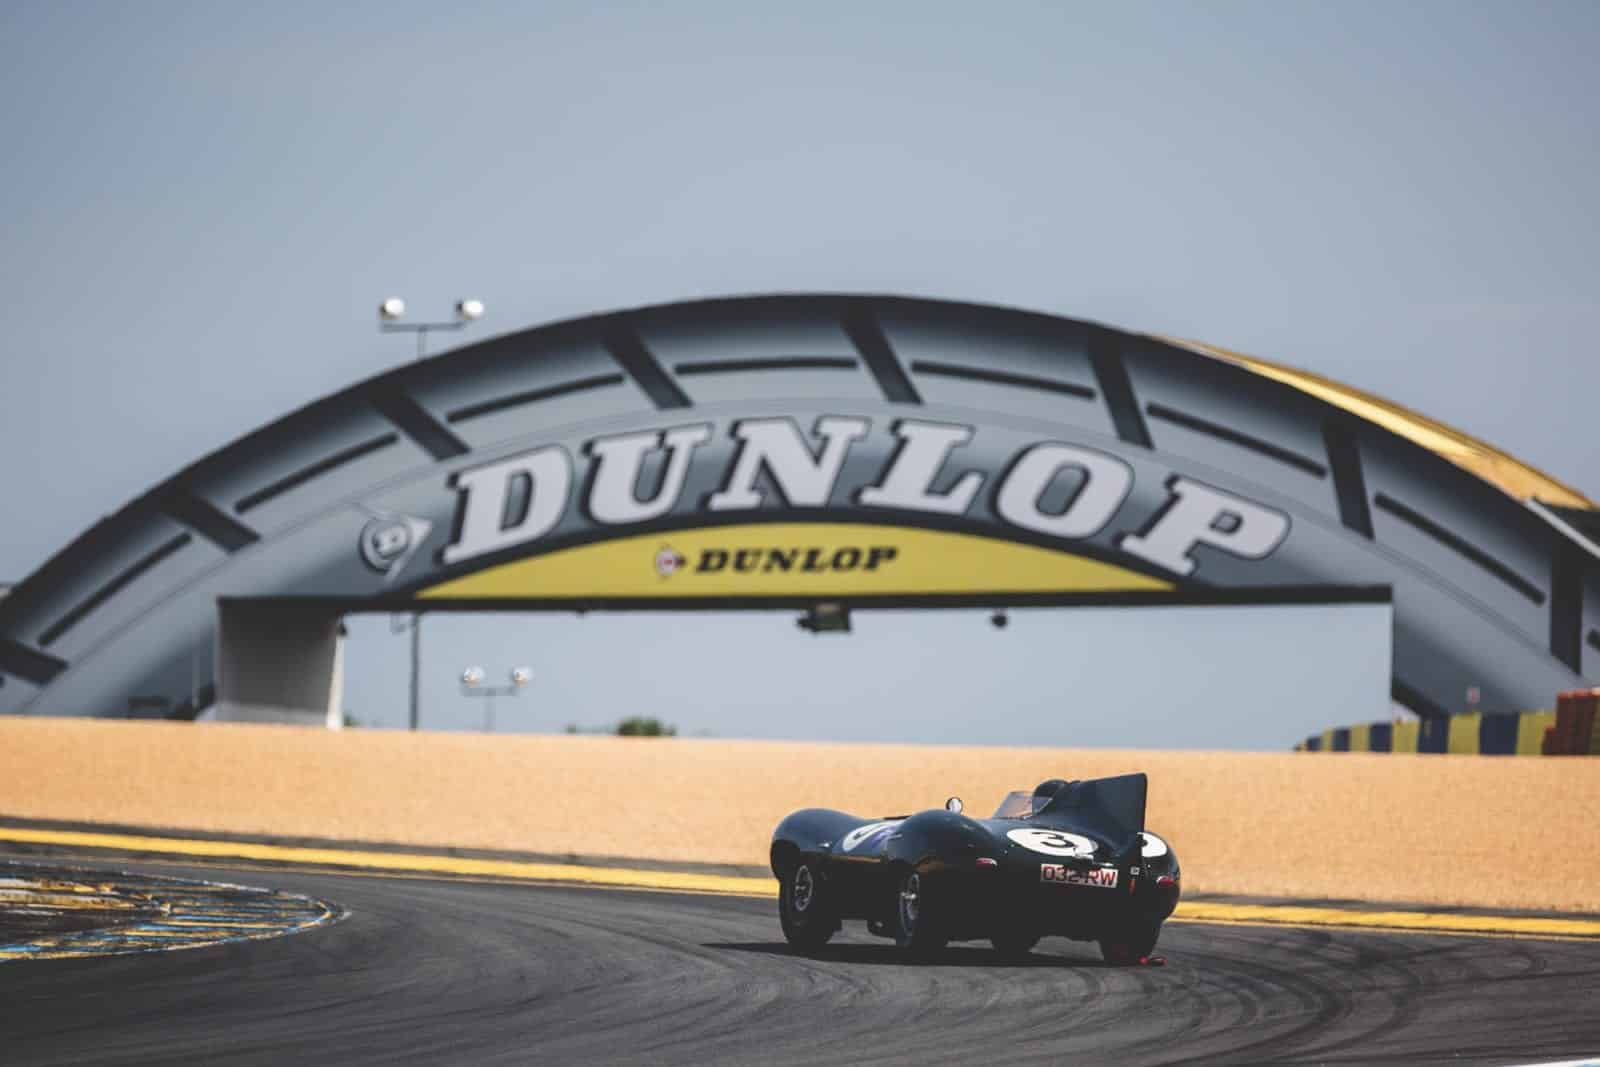 Le Mans Classic Jaguar Dunlop Bridge